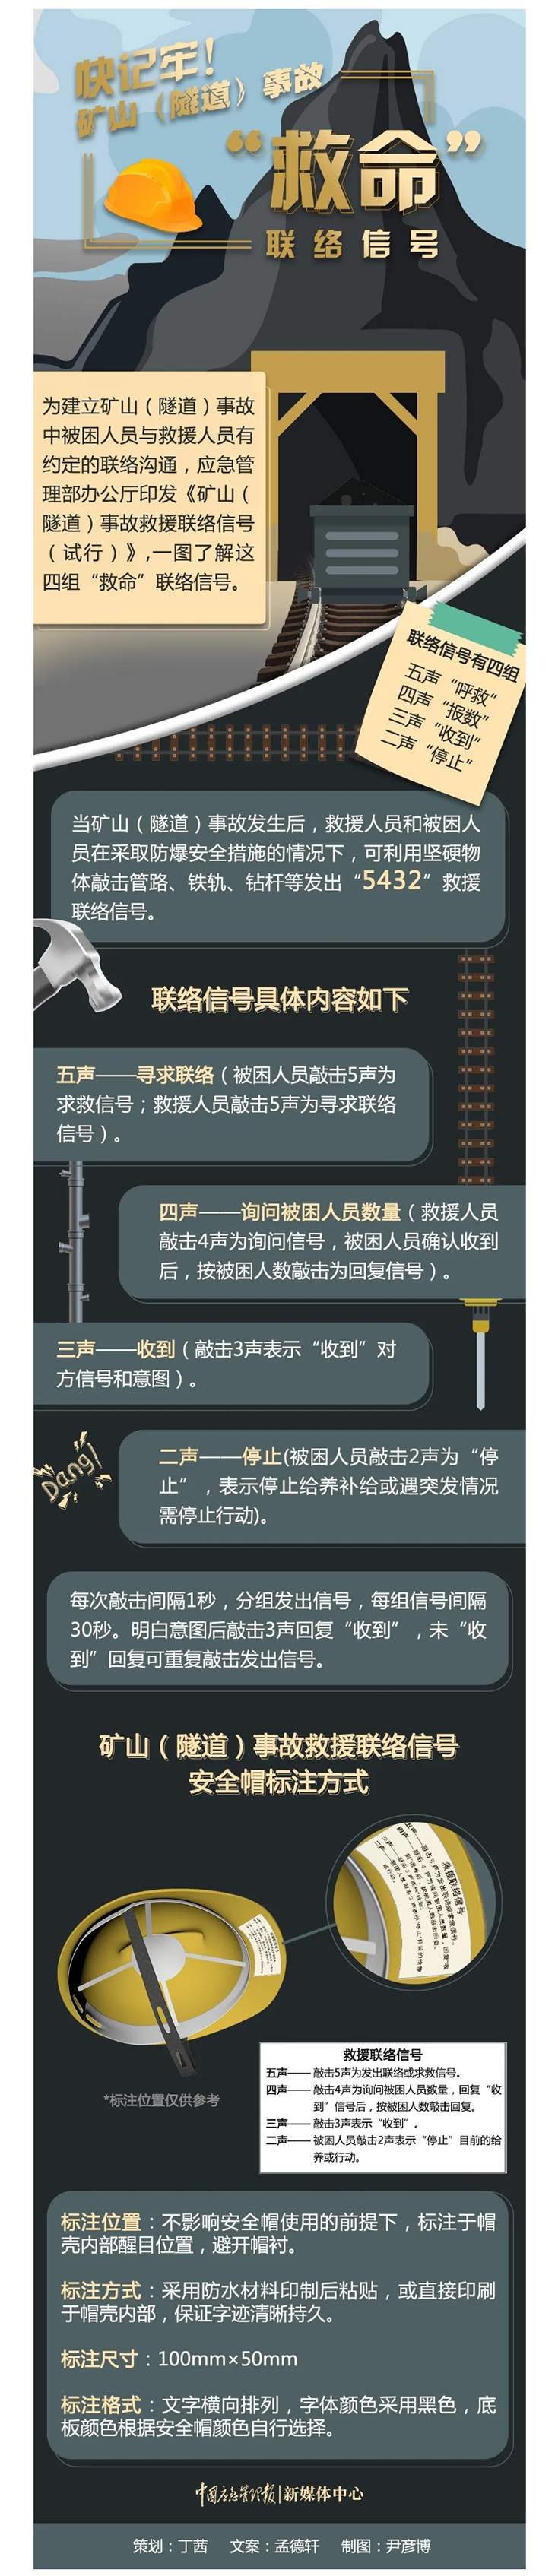 矿山隧道事故救援联络信号怎么敲----中华人民共和国应急管理部.jpg